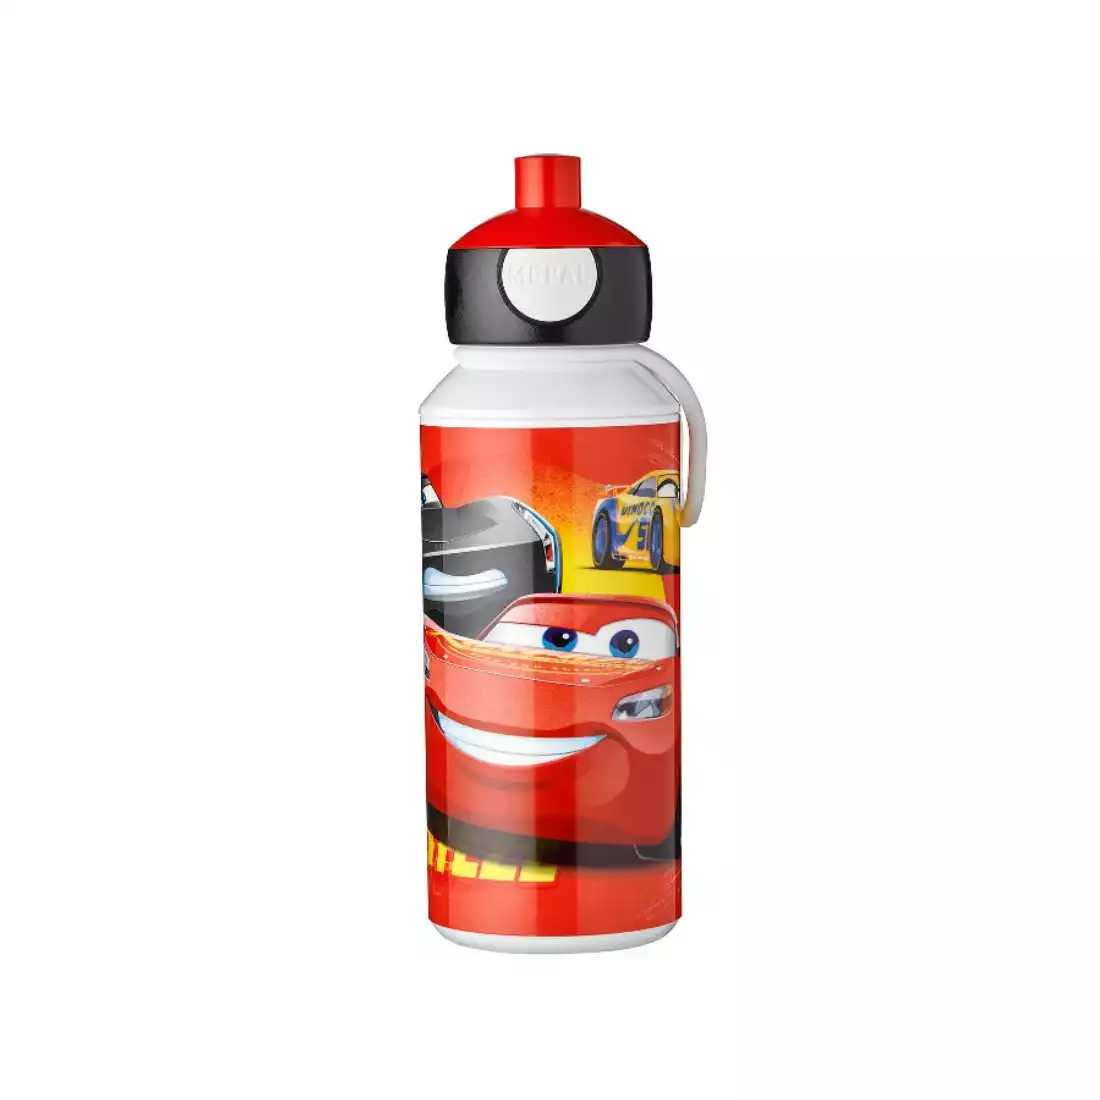 MEPAL CAMPUS POP UP sticla de apa pentru copii 400ml Cars 